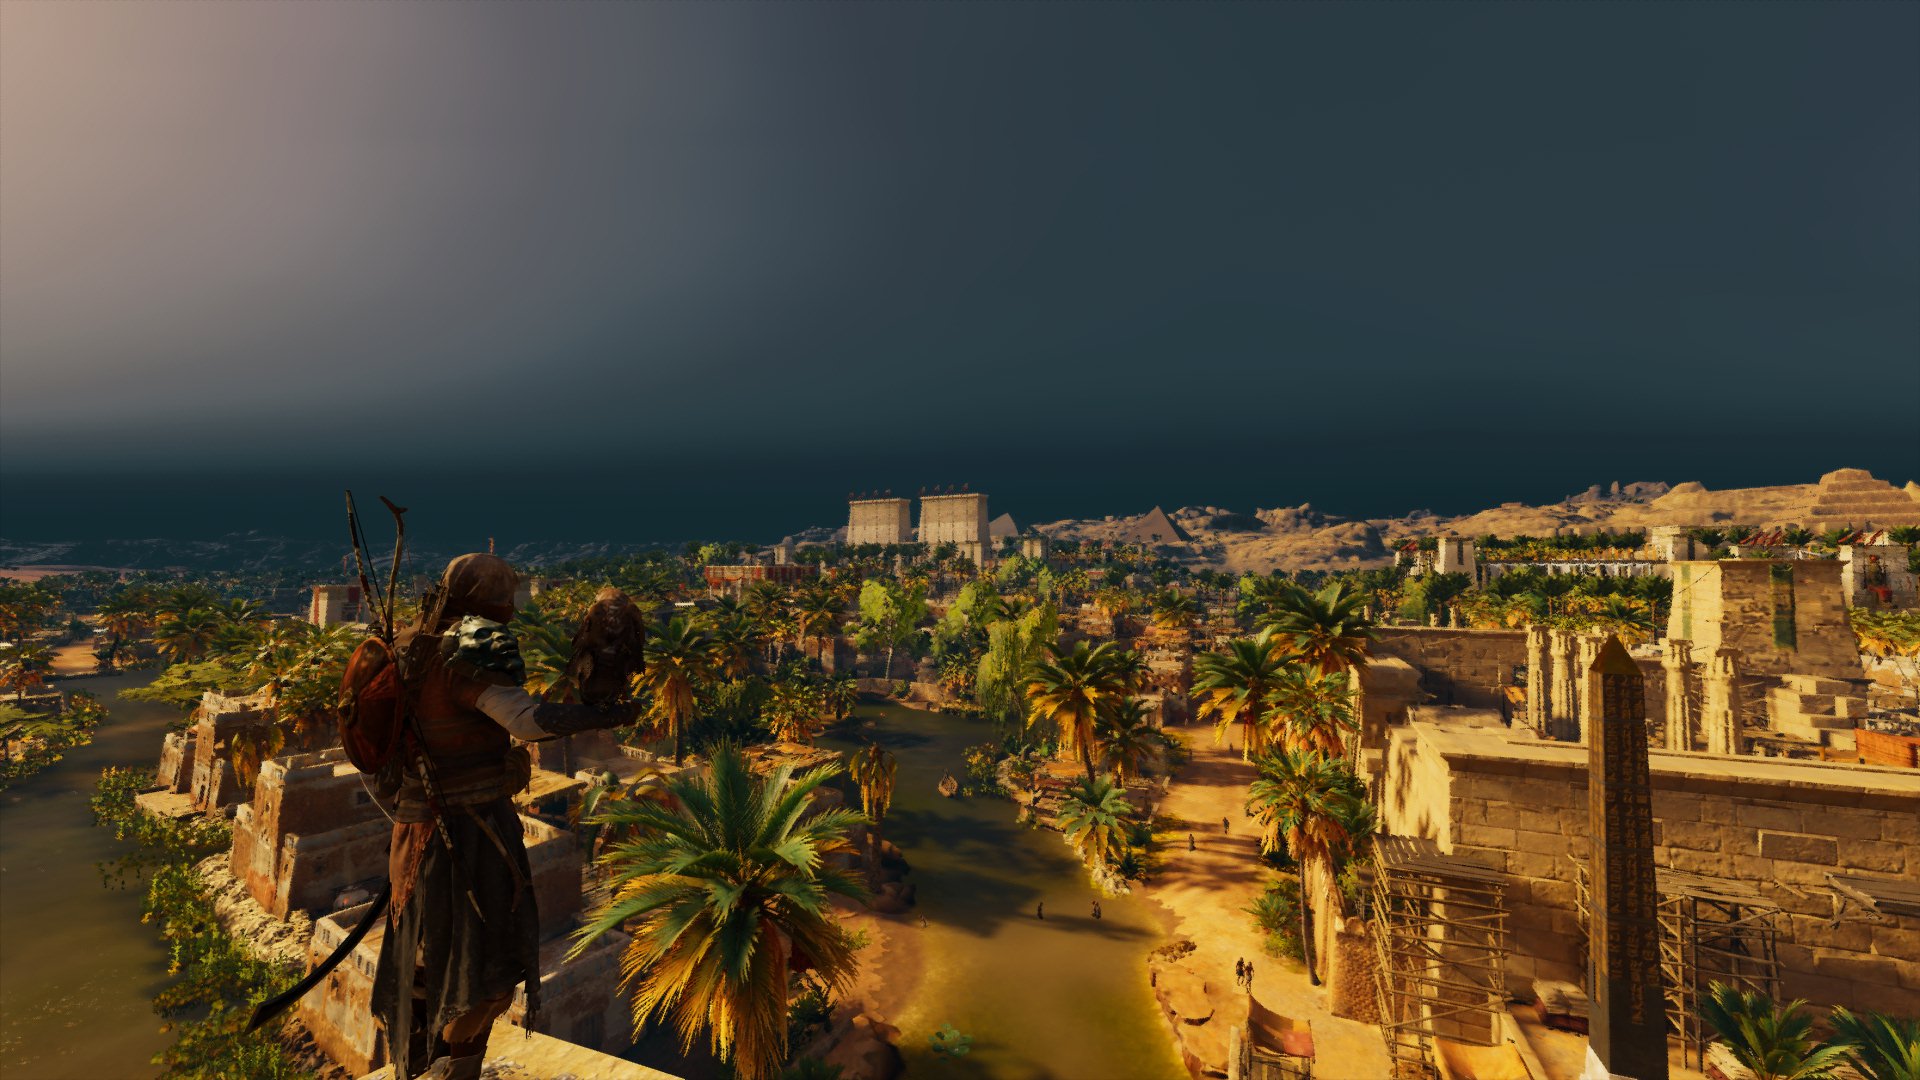 Assassins Creed, Assassins Creed: Origins, Screen shot, Video games, Ubisoft Wallpaper